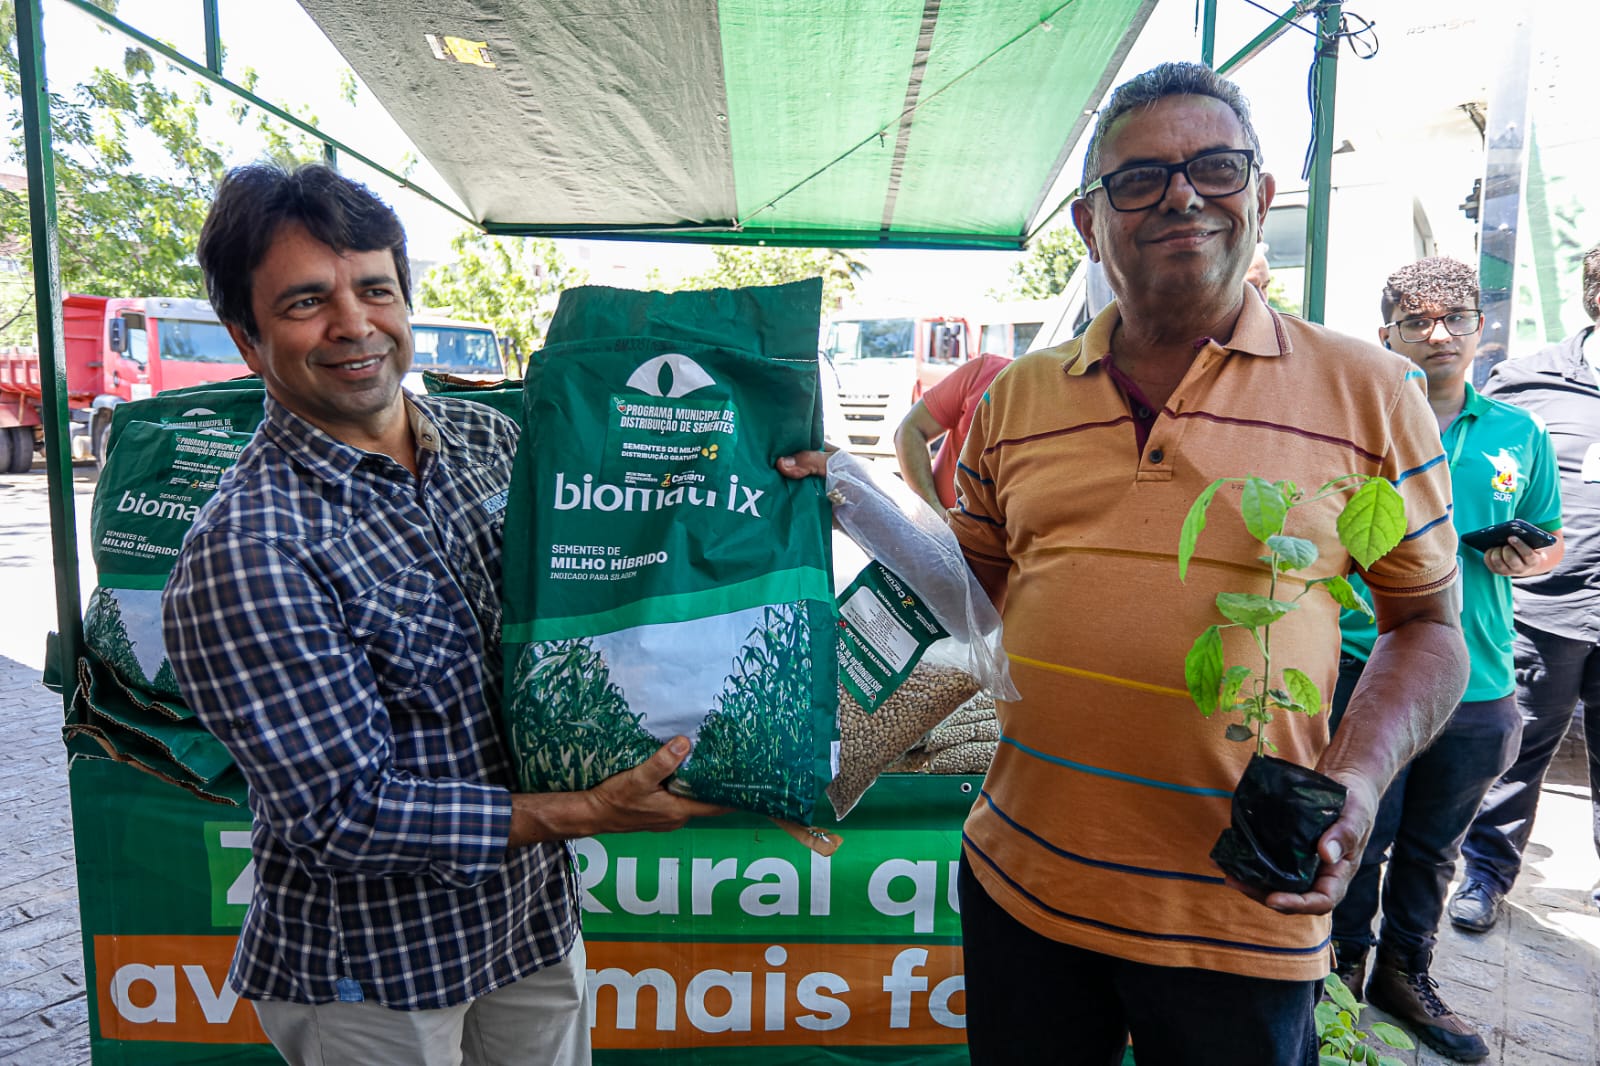 Prefeitura de Caruaru bate recorde na distribuição de sementes para agricultores da Zona Rural